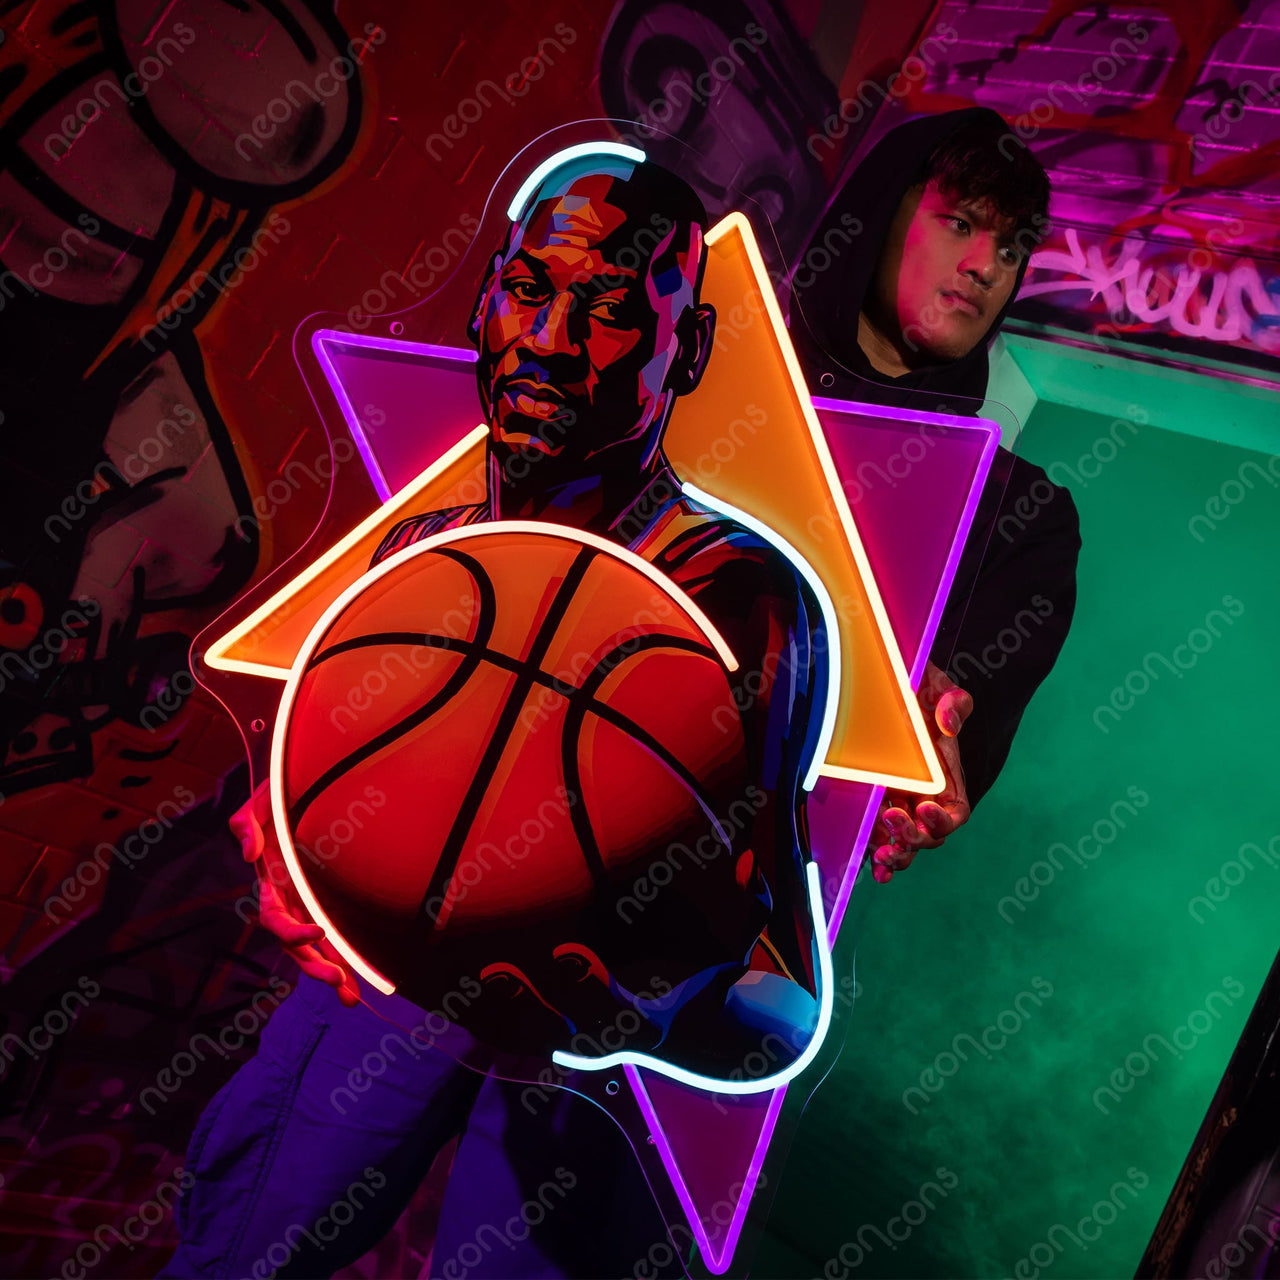 "Baller" Neon x Acrylic Artwork by Neon Icons